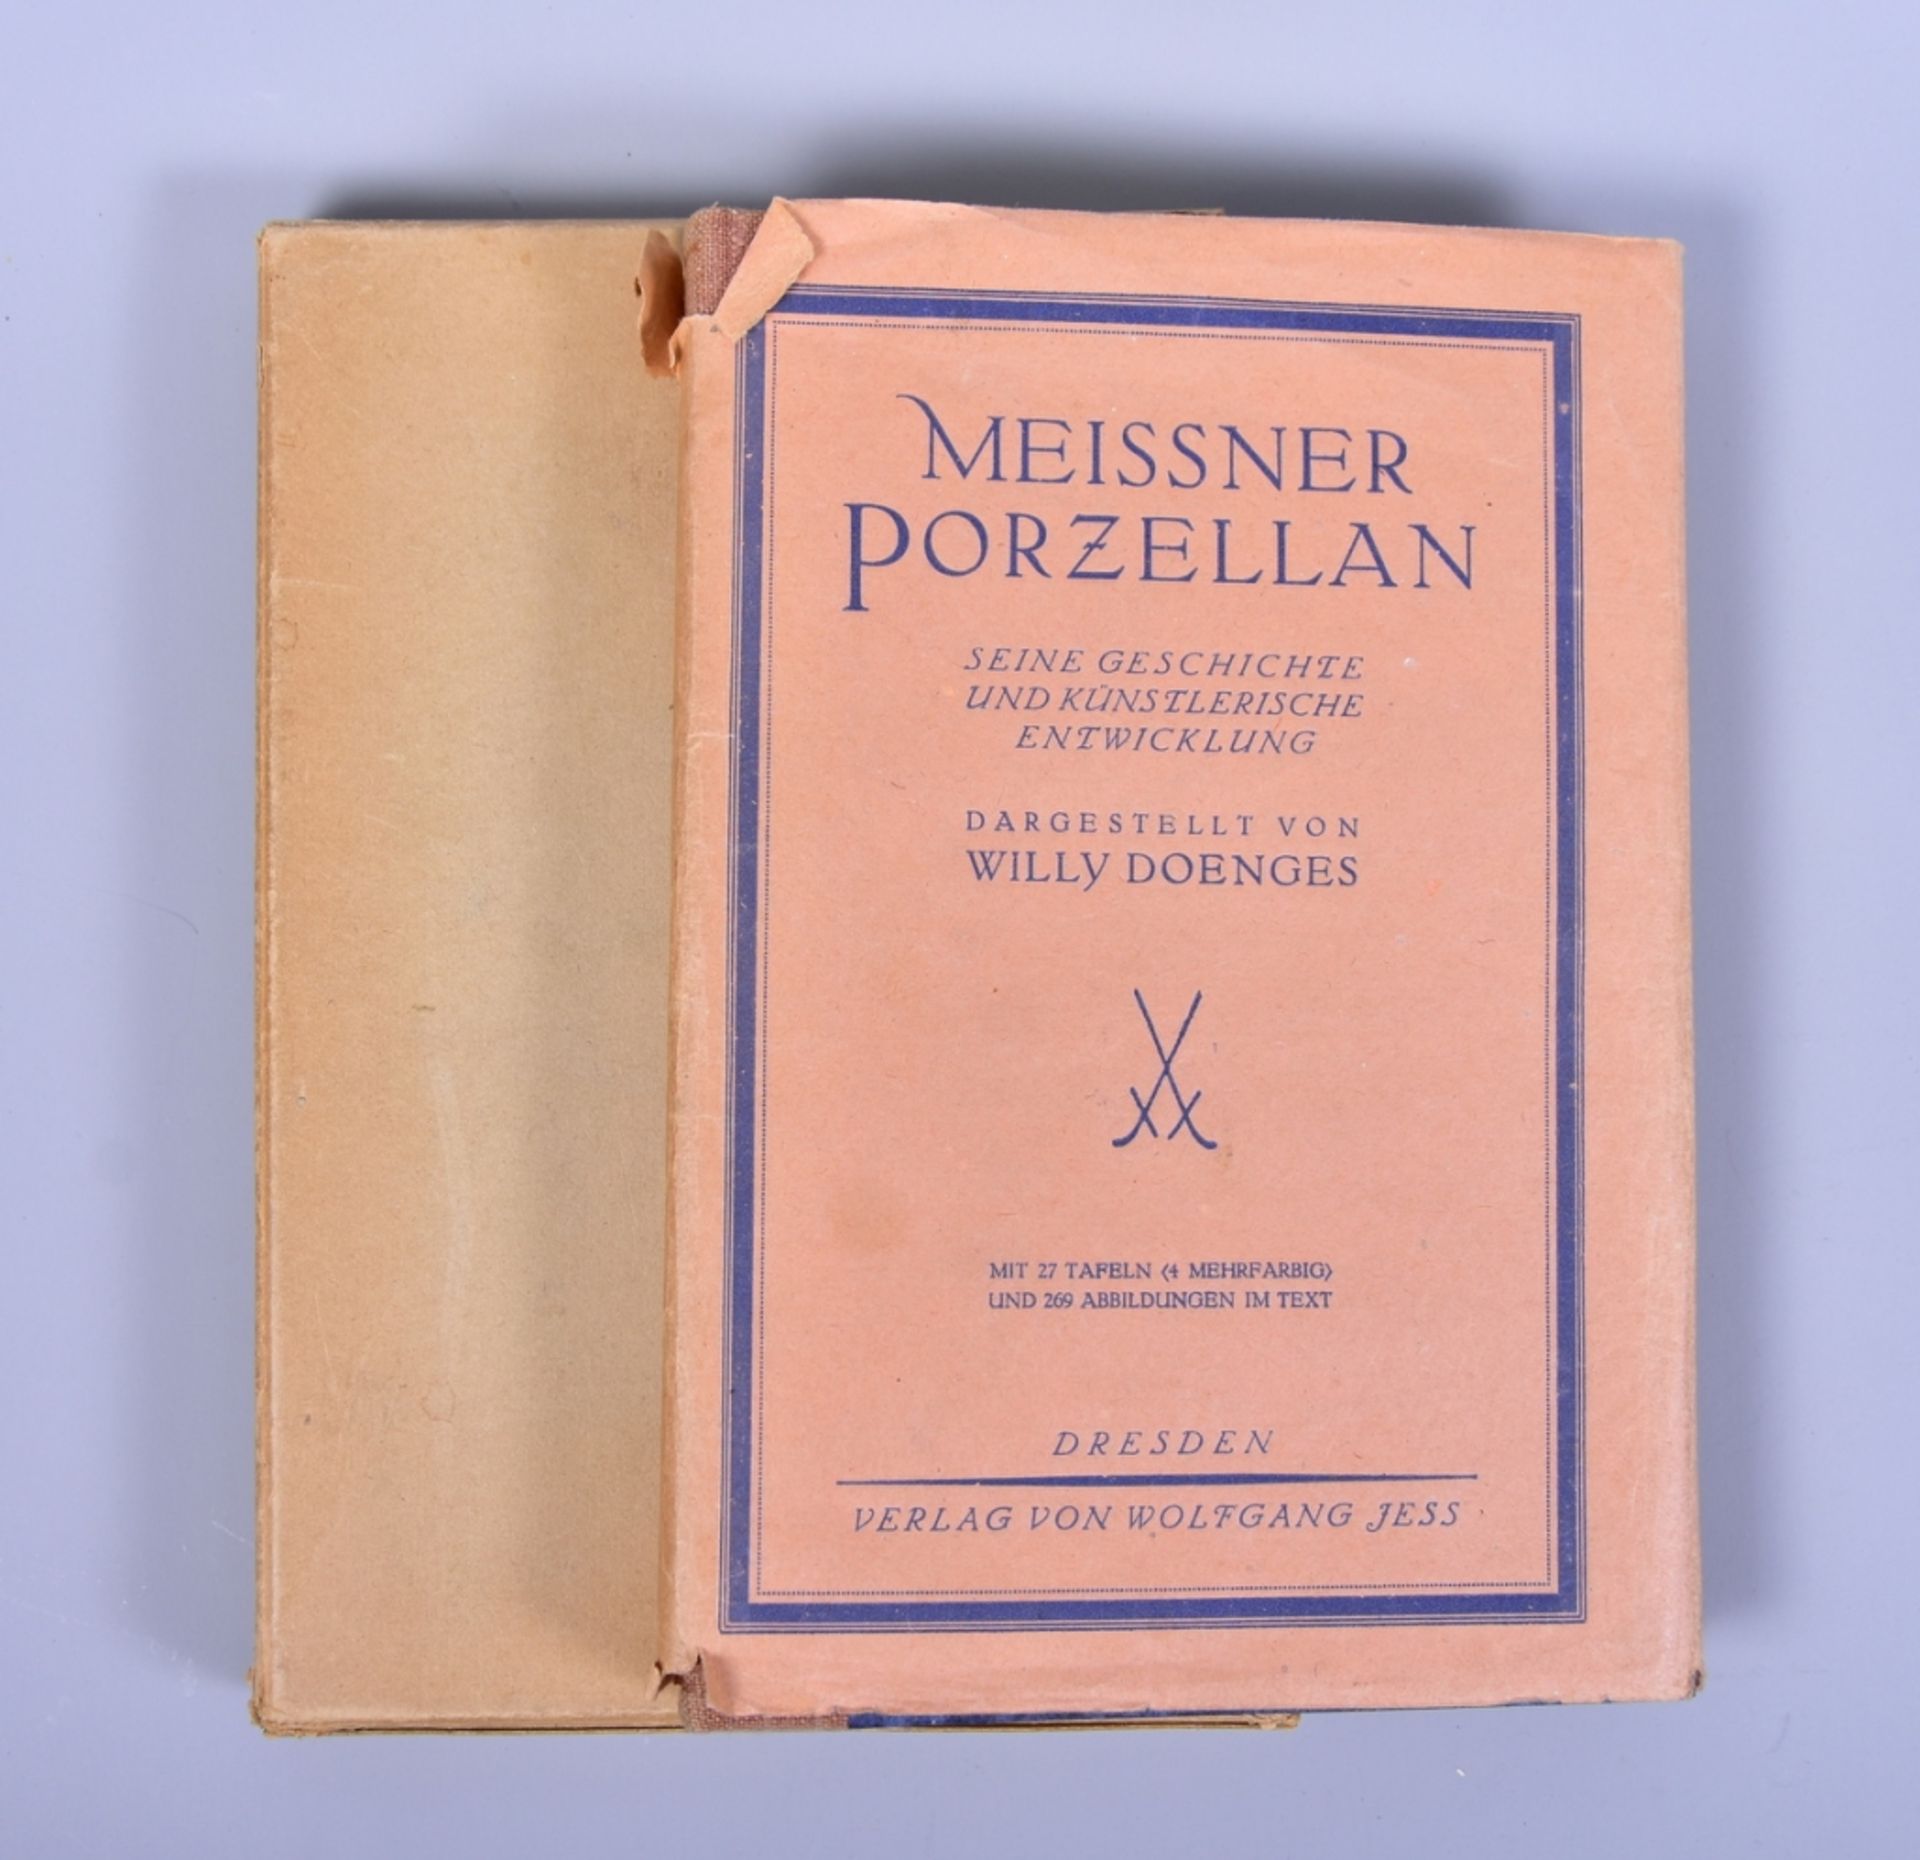 "Meissner Porzellan, Seine Geschichte und Künstlerische Entwicklung" dargest. v. W. Doengens, 2.